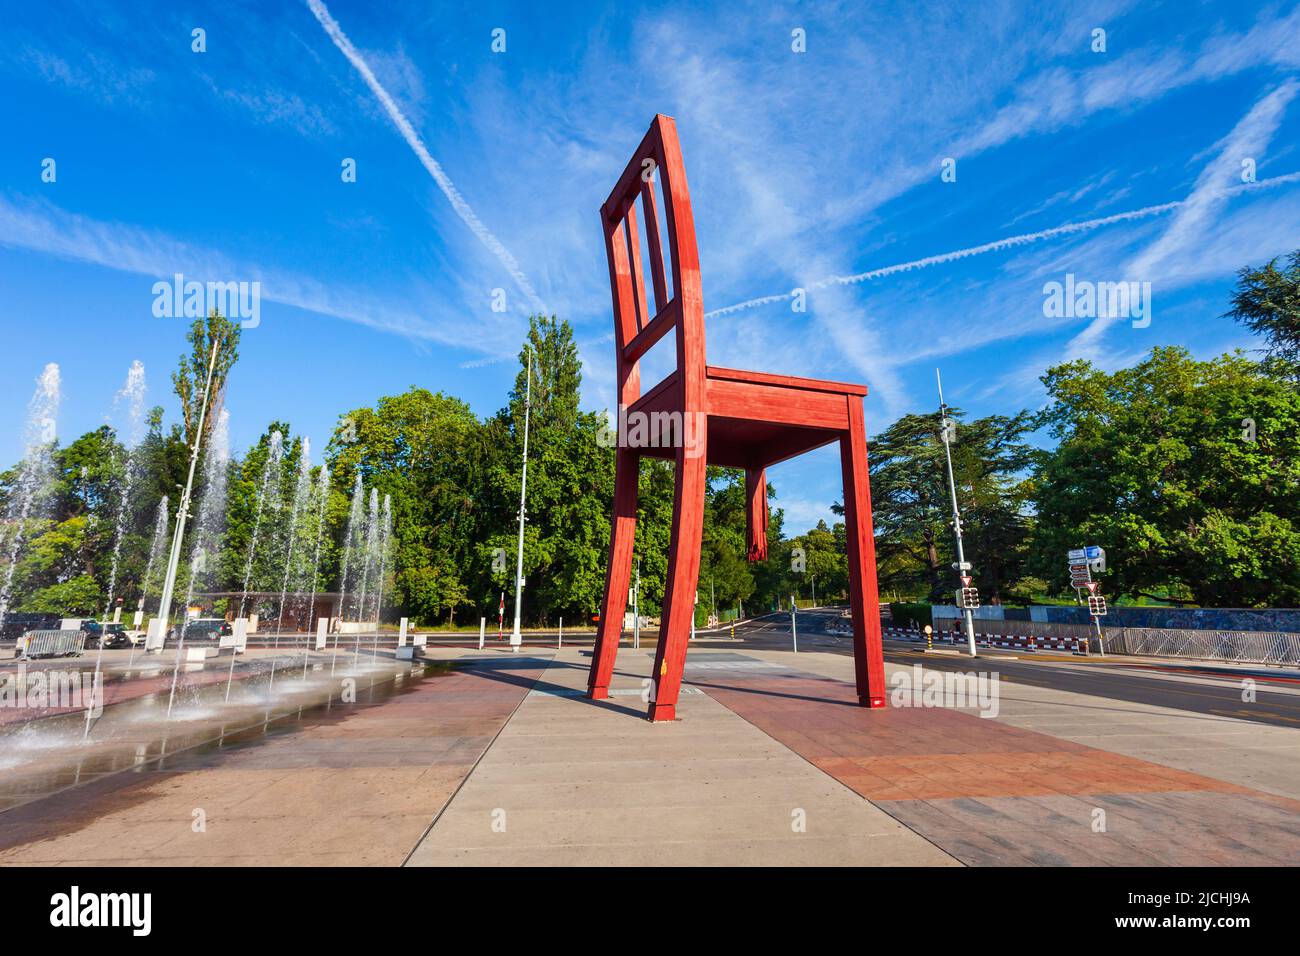 Genf, Schweiz - 20. JULI 2019: kaputter Stuhl oder Sessel Cassee ist eine hölzerne Skulpturen des Schweizer Künstlers Daniel Berset und Louis Geneve in Genf Stockfoto